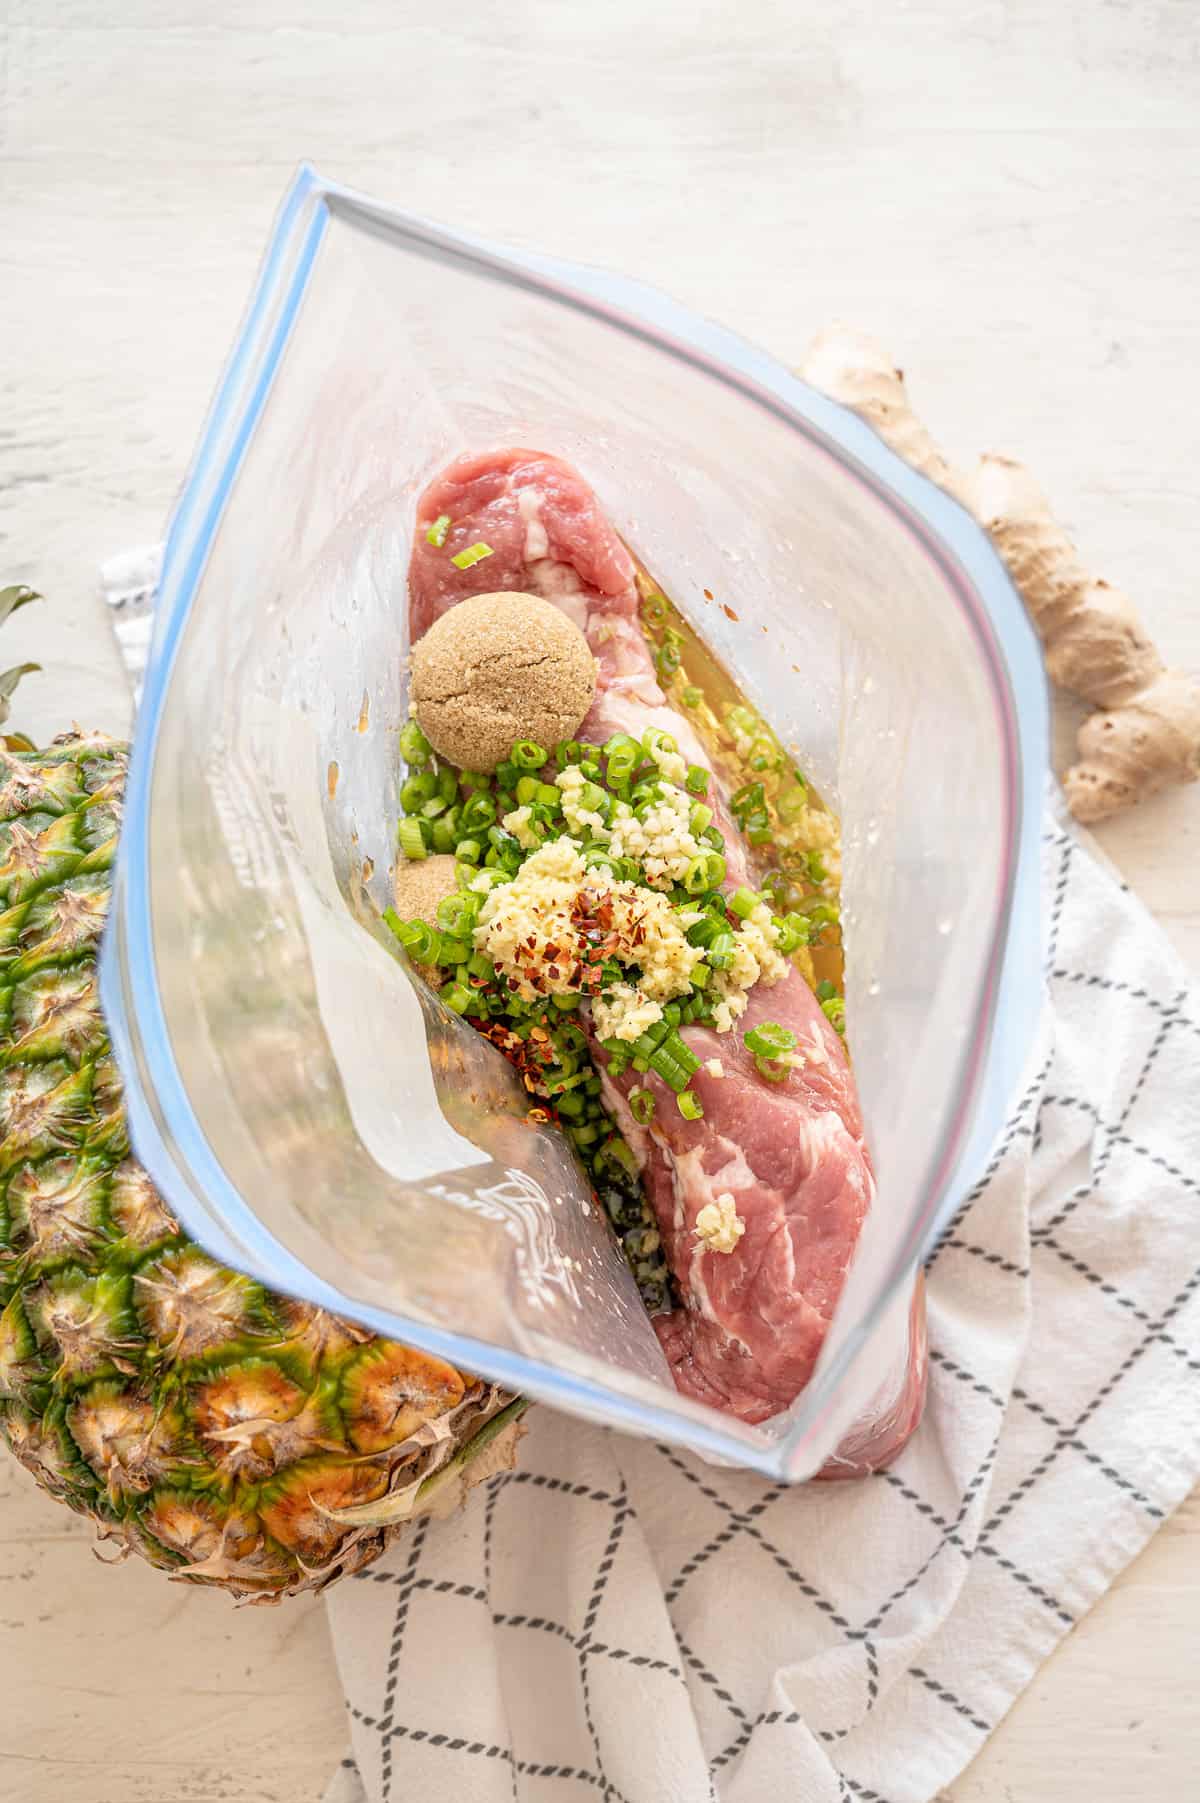 Ingredients for Hawaiian pork tenderloin in a freezer-safe bag.